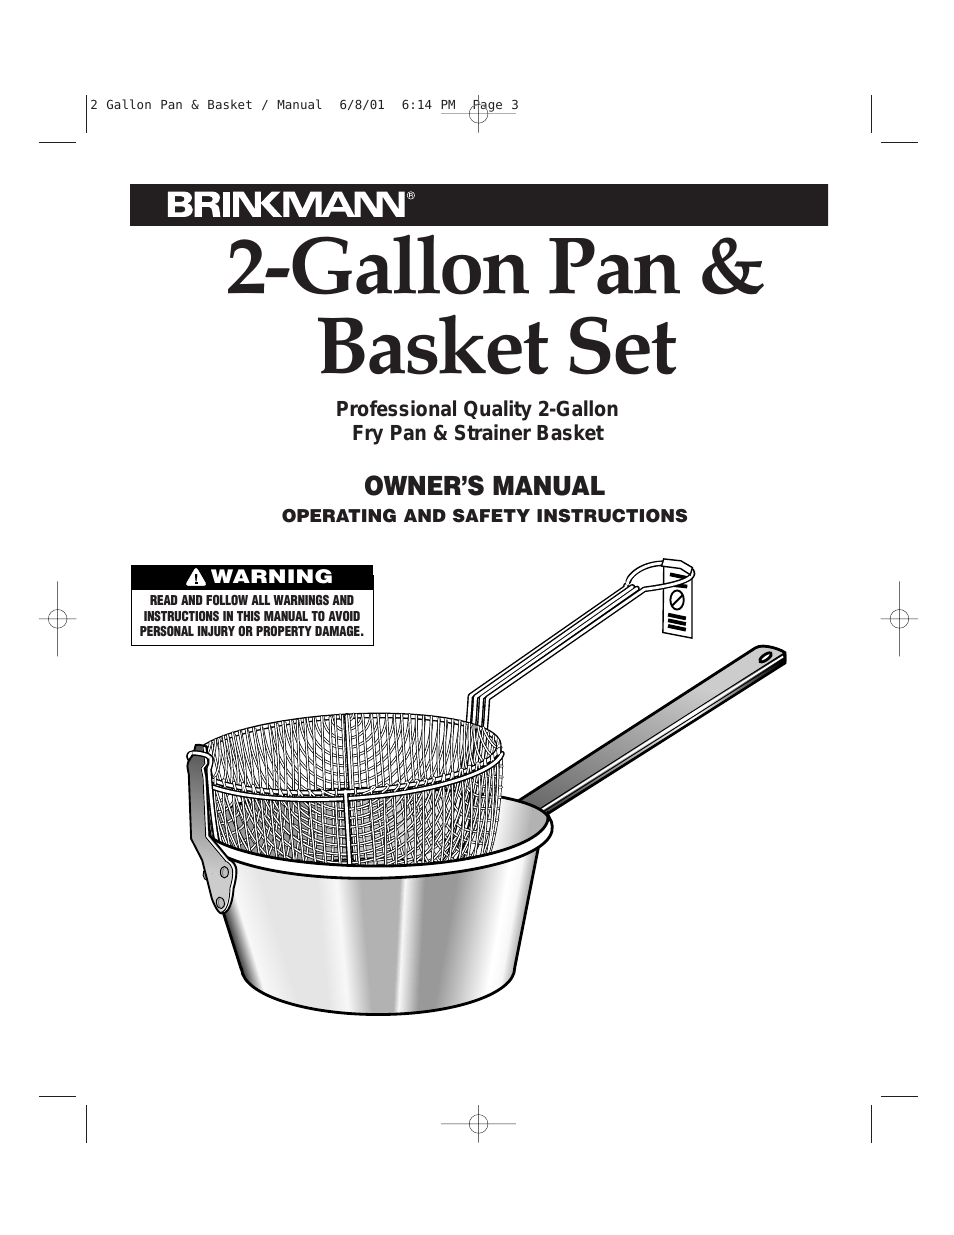 2-GALLON PAN & BASKET SET 815-3610-0